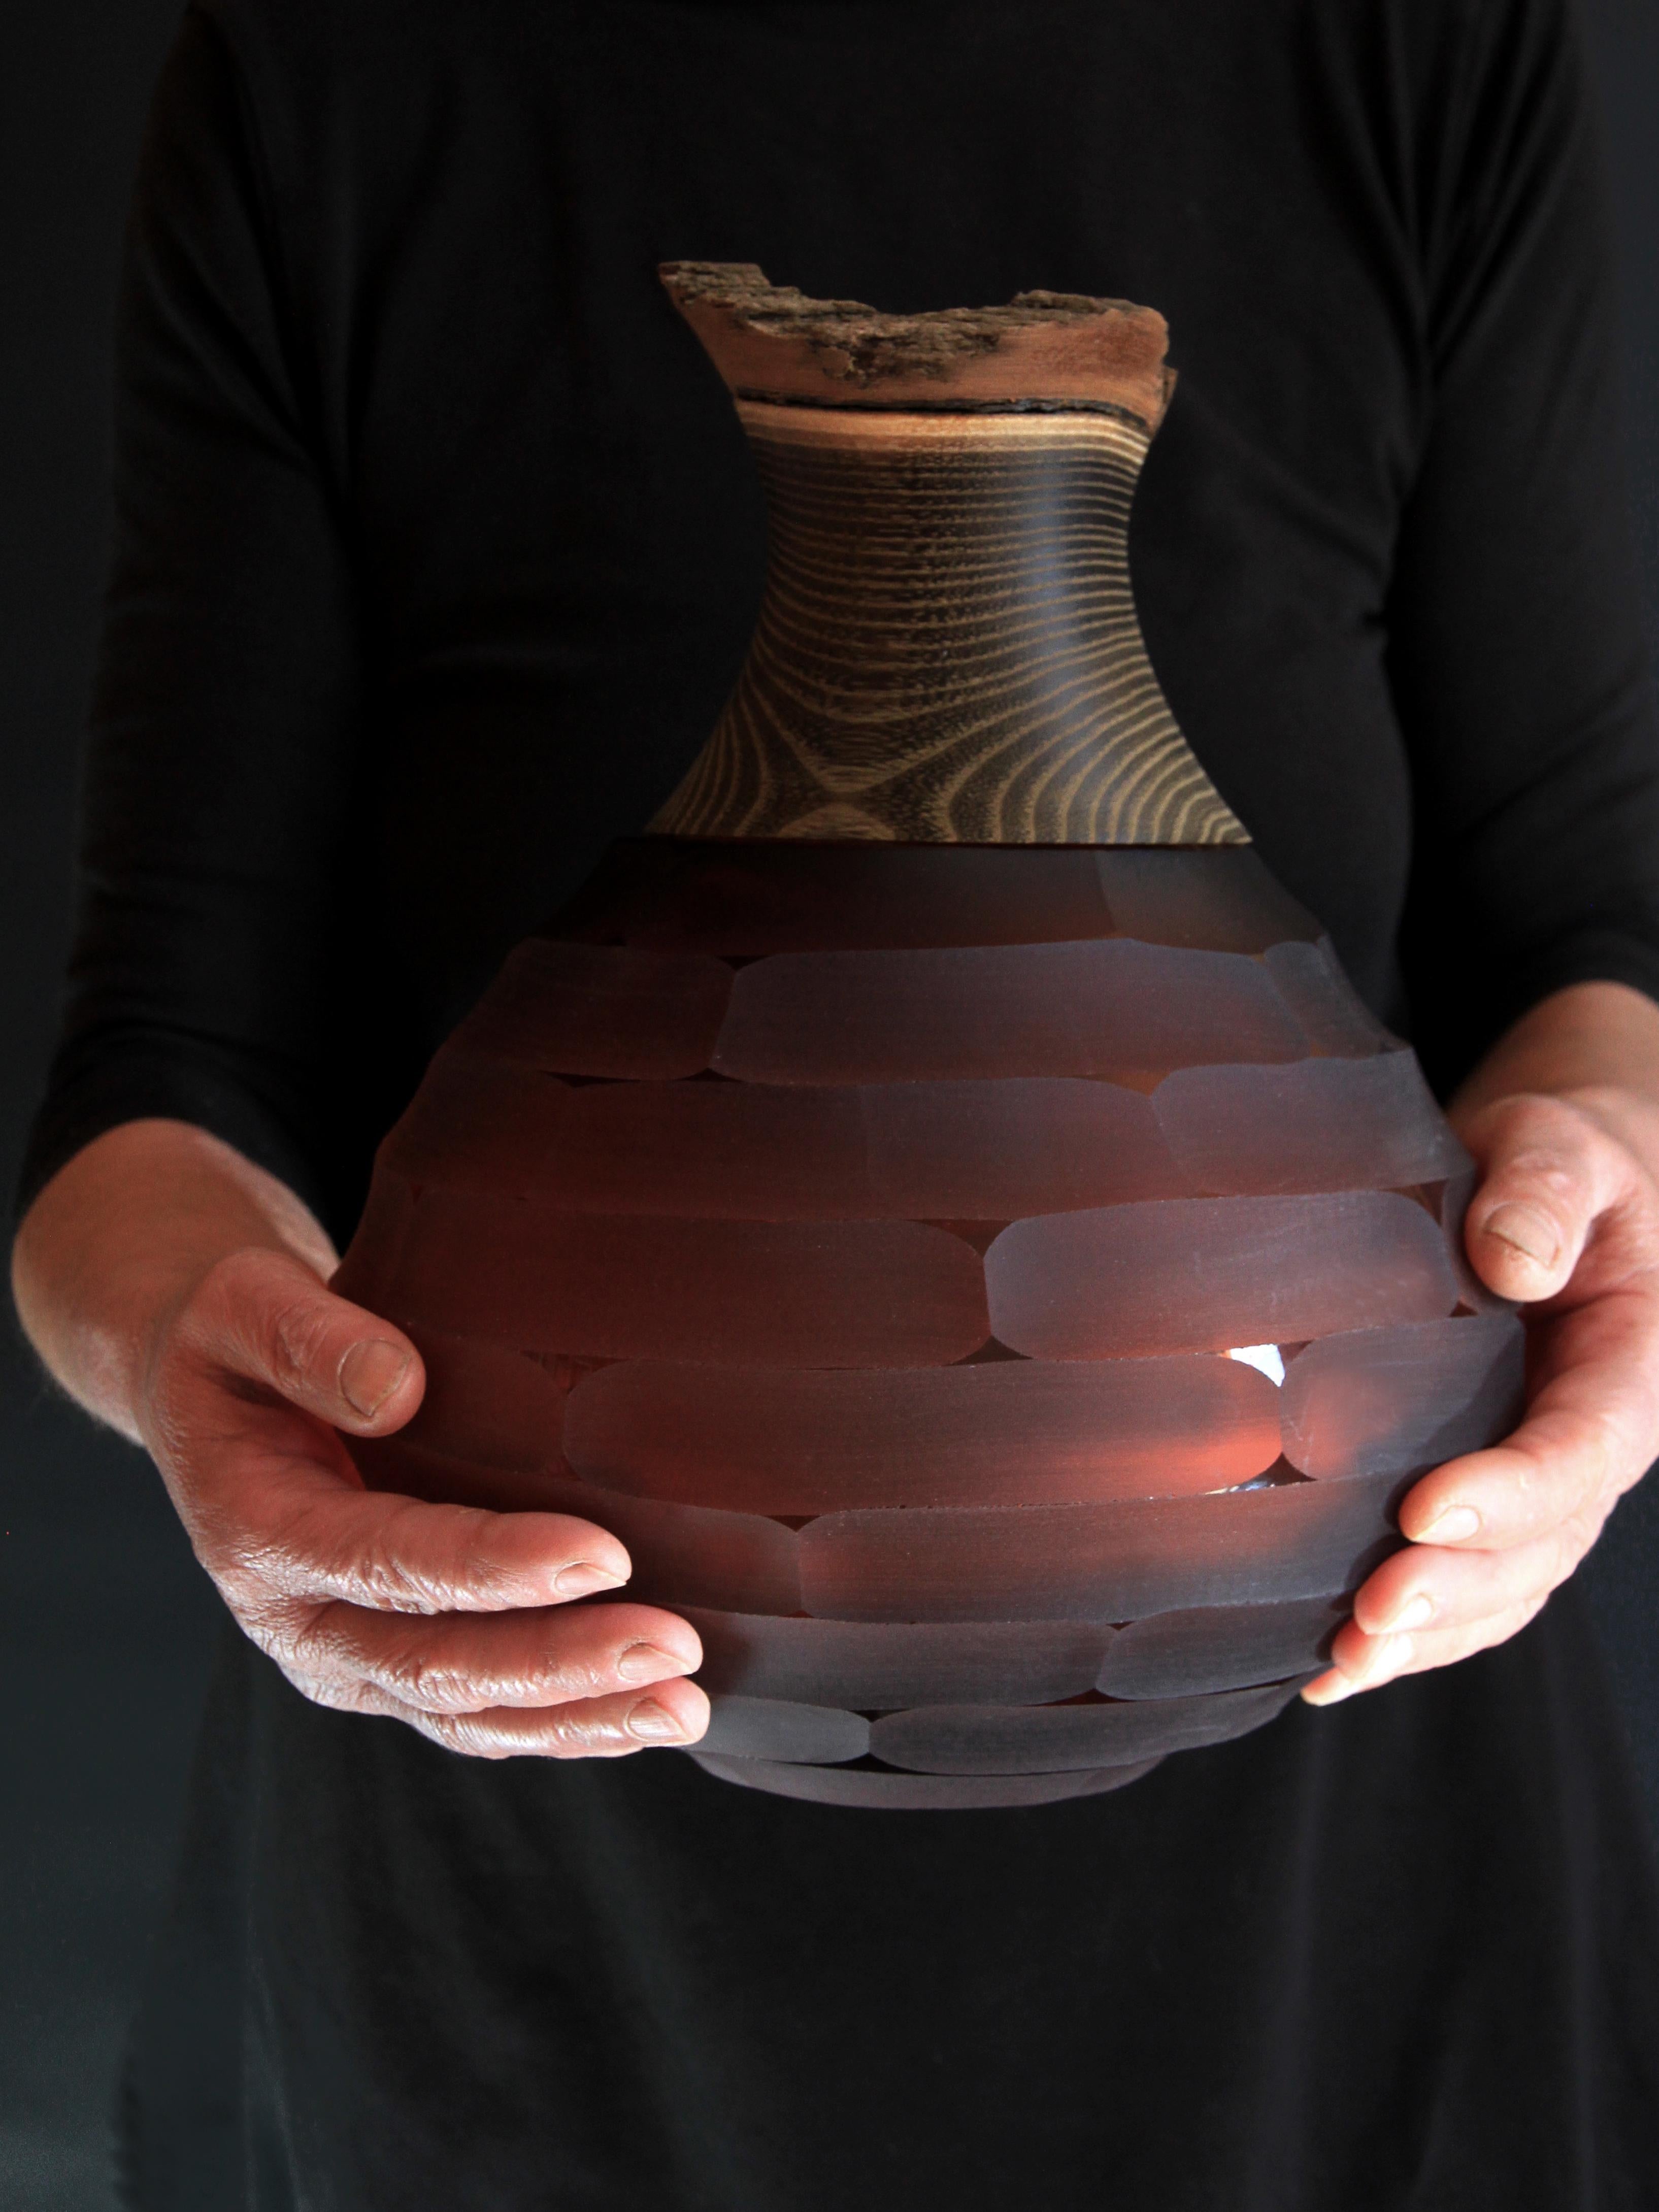 Vase empilable Sculpt en verre soufflé et laiton, Pia Wüstenberg
Dimensions : hauteur 30 cm, diamètre 23 cm.
A la fois brut et raffiné, cet assortiment joue avec les multiples métamorphoses que le verre accorde au matériau. Le verre est d'abord